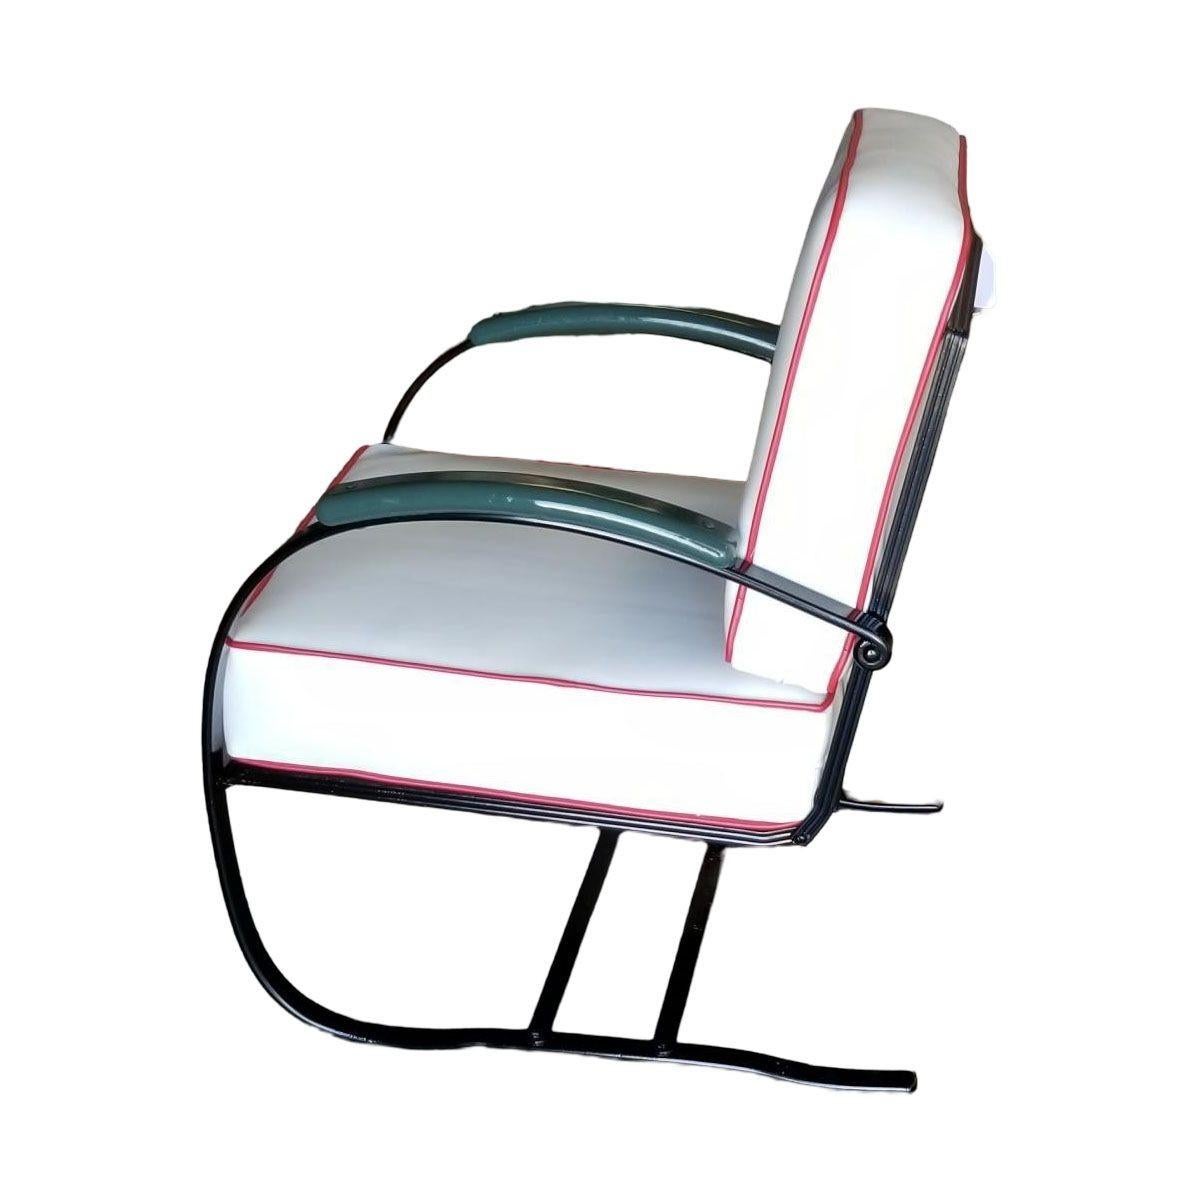 Fauteuil de salon Art Déco Wolfgang Hoffmann vert et noir pour Howell furniture. Ces fauteuils sont constitués d'un cadre plat en fer chromé qui épouse la forme des jambes, des bras et du dossier du siège profilé. Les bras sont surmontés